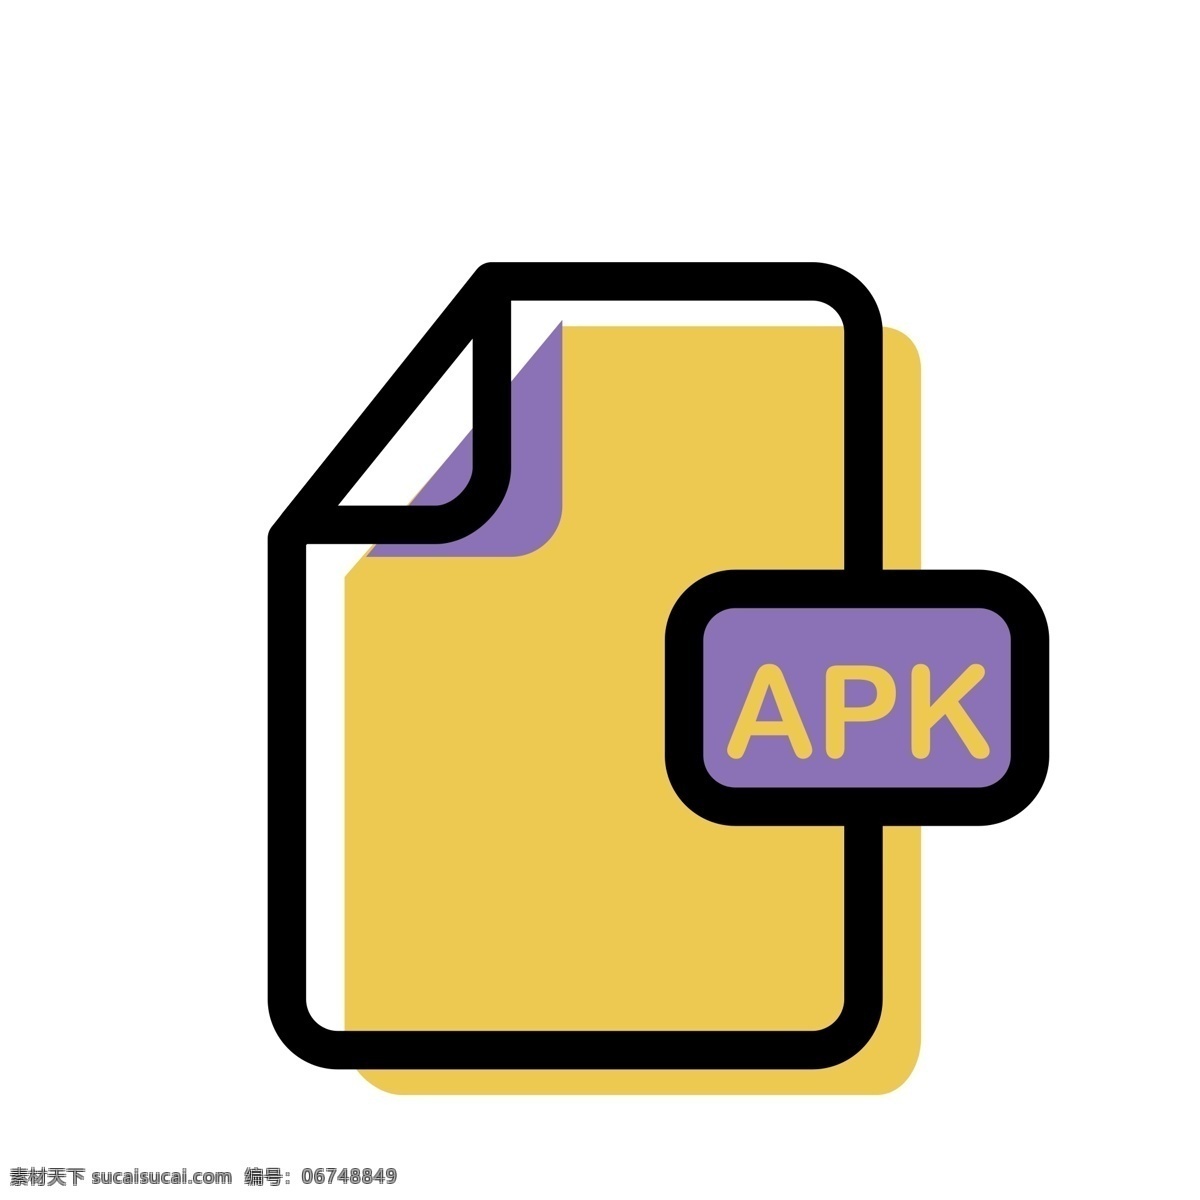 apk 软件 格式 免 抠 图 apk文件 软件图标 格式文件 ui应用图标 电脑文件图标 软件格式 卡通图案 卡通插画